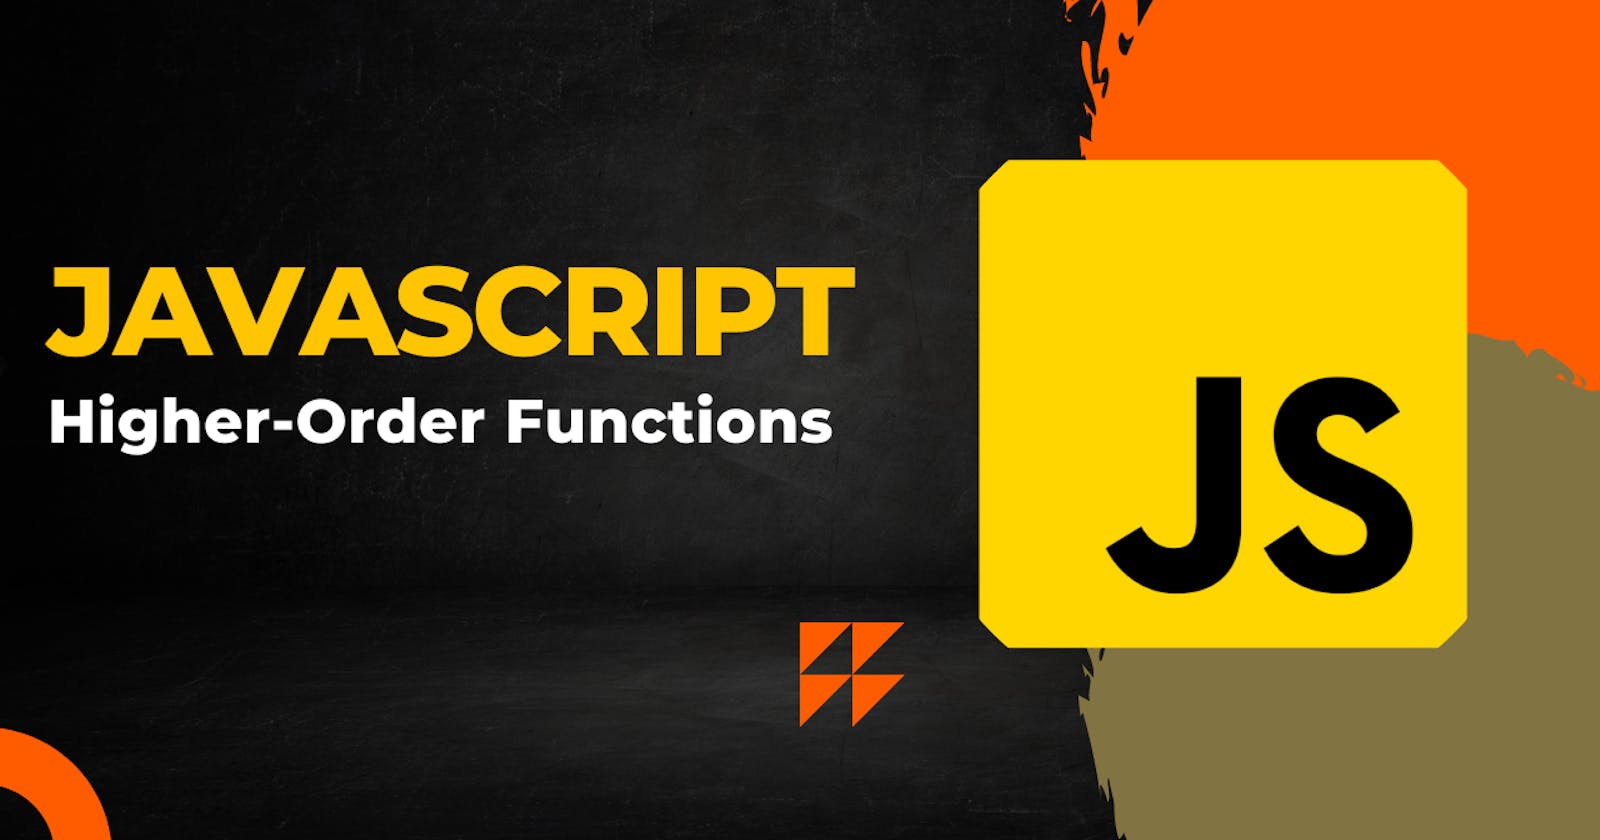 Higher-Order Functions in JavaScript?